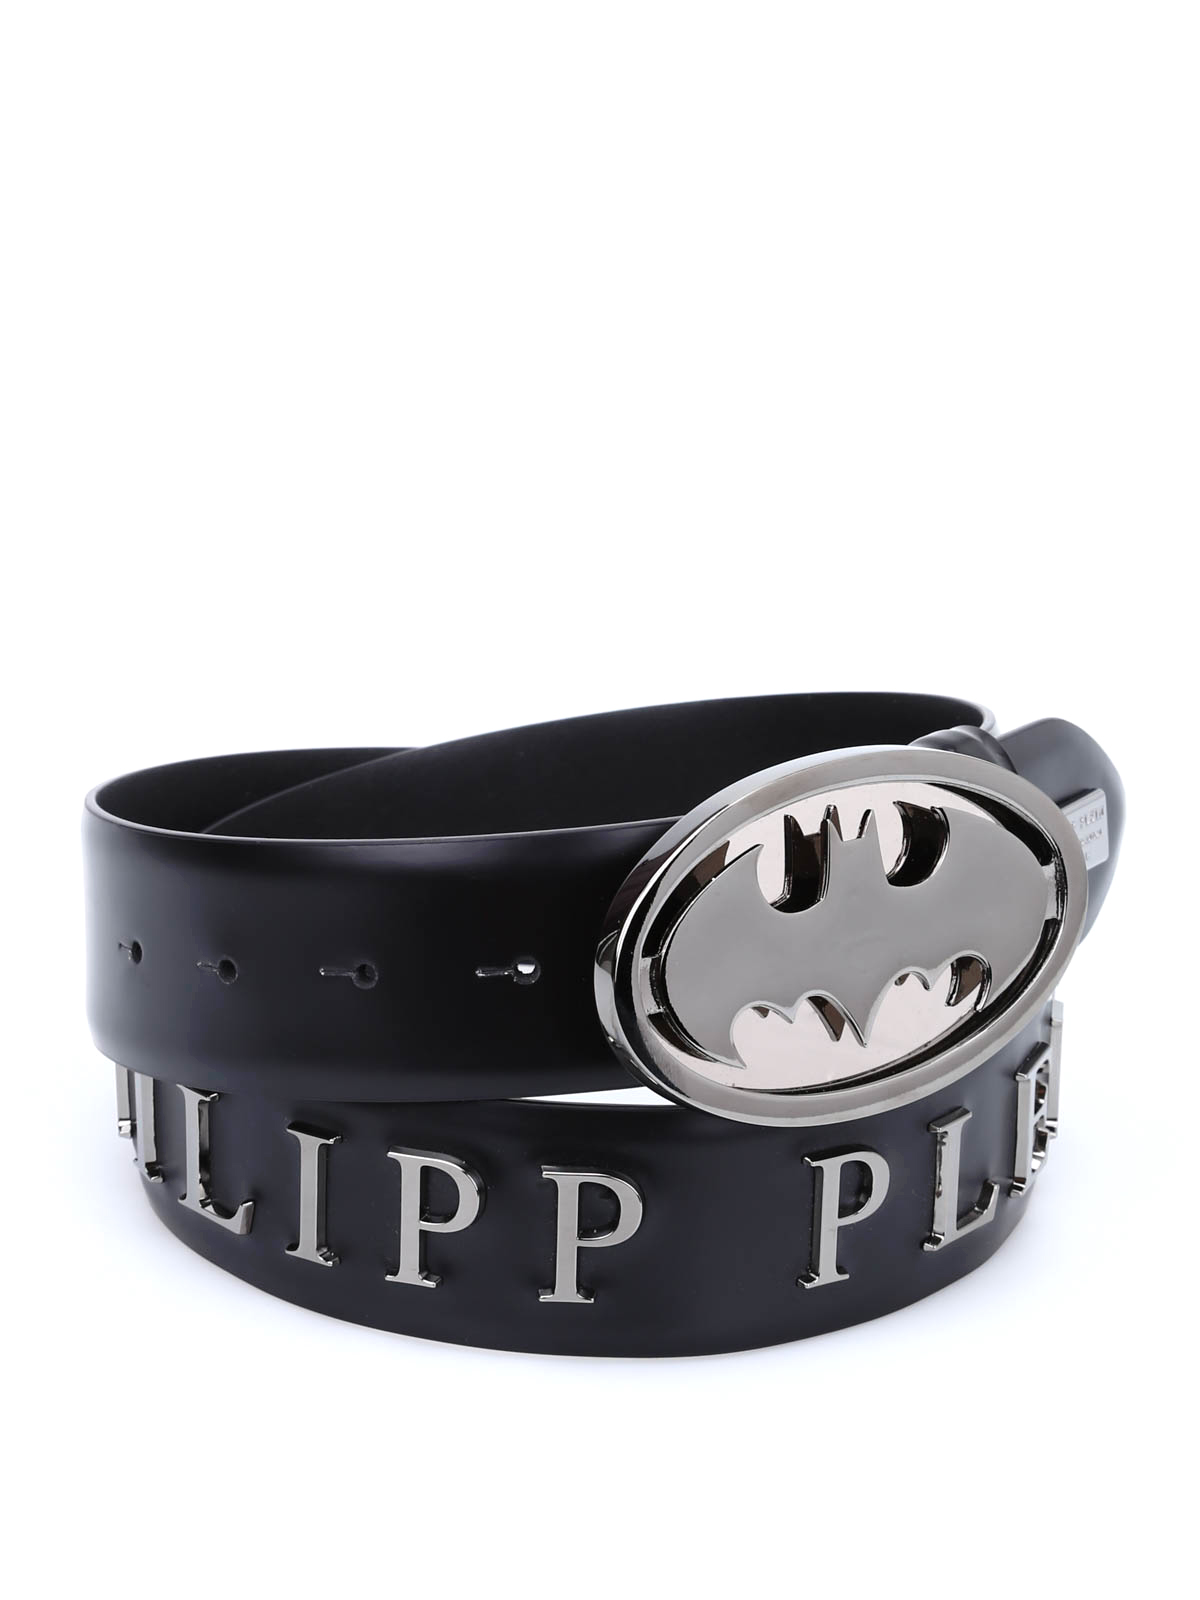 begin Graan Onderdrukken Belts Philipp Plein - About Me leather belt - AM7731880202 | iKRIX.com